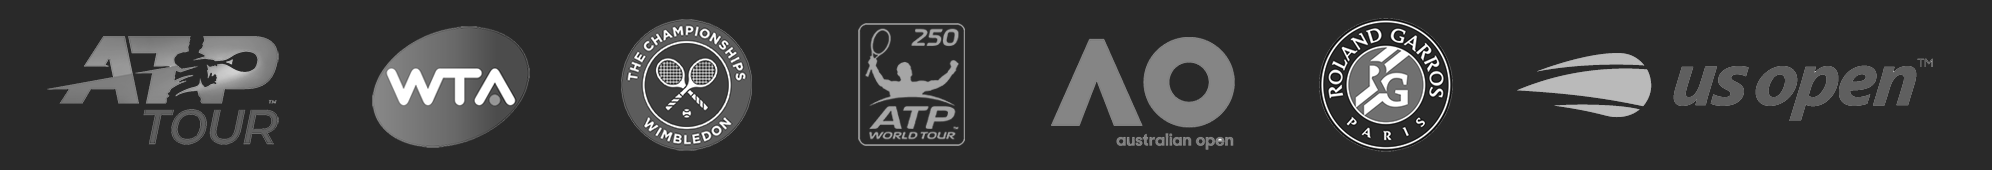 Tennis logos